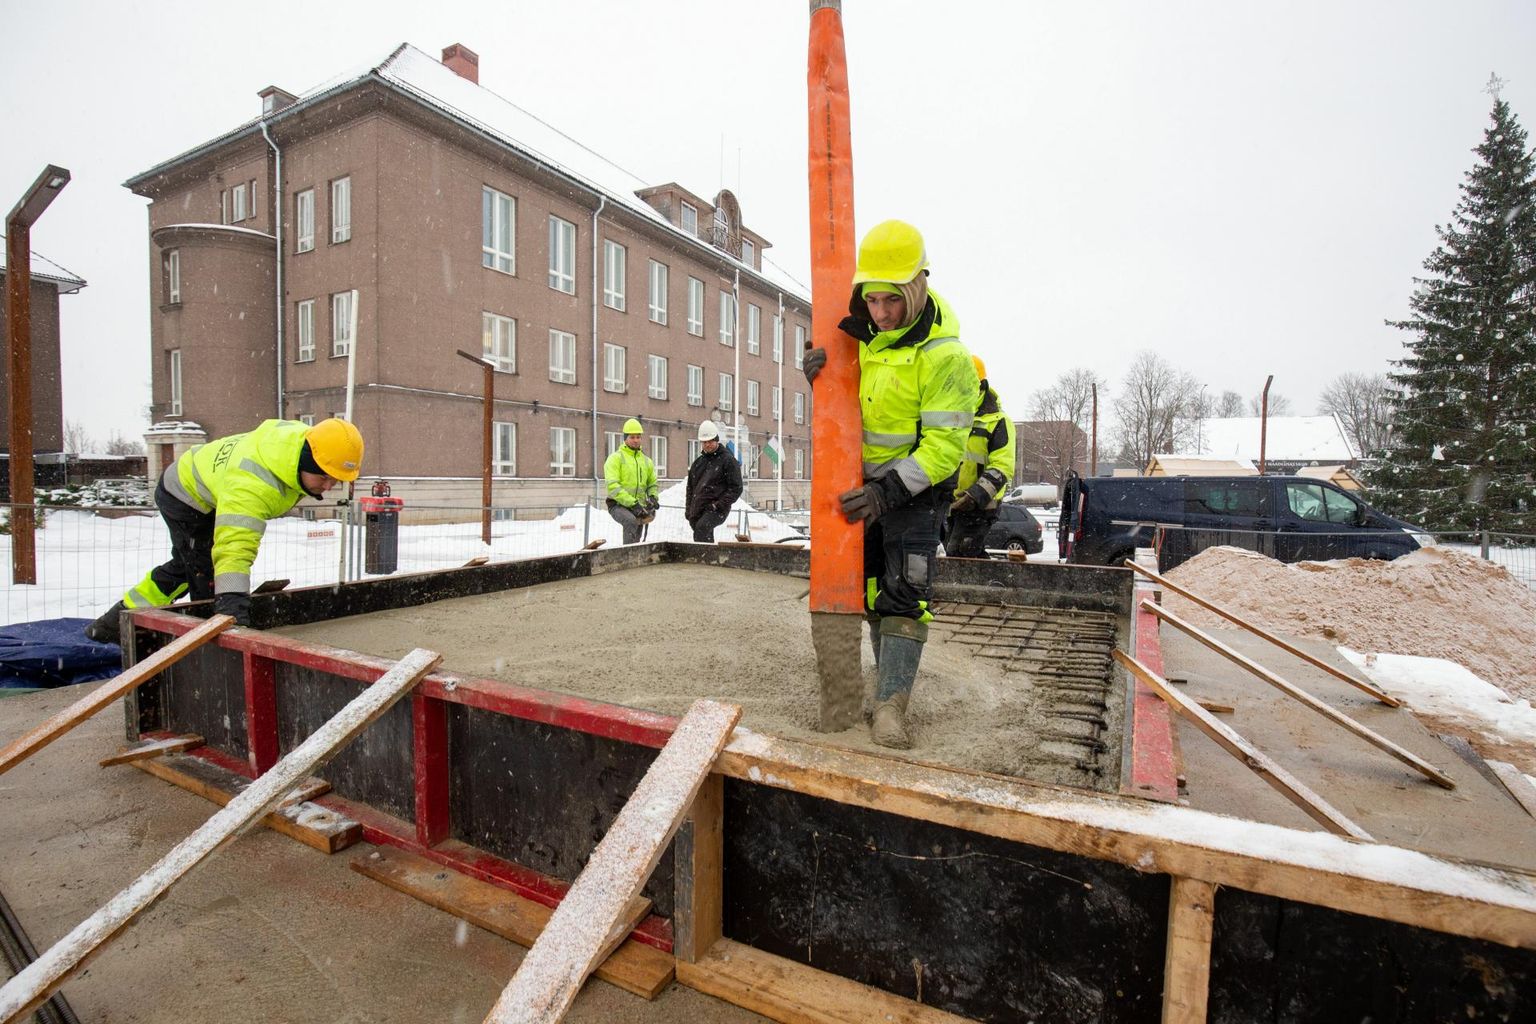 Töömehed valasid teisipäeval vabadussõja monumendi vundamendi tarvis viimased kantmeetrid betooni.